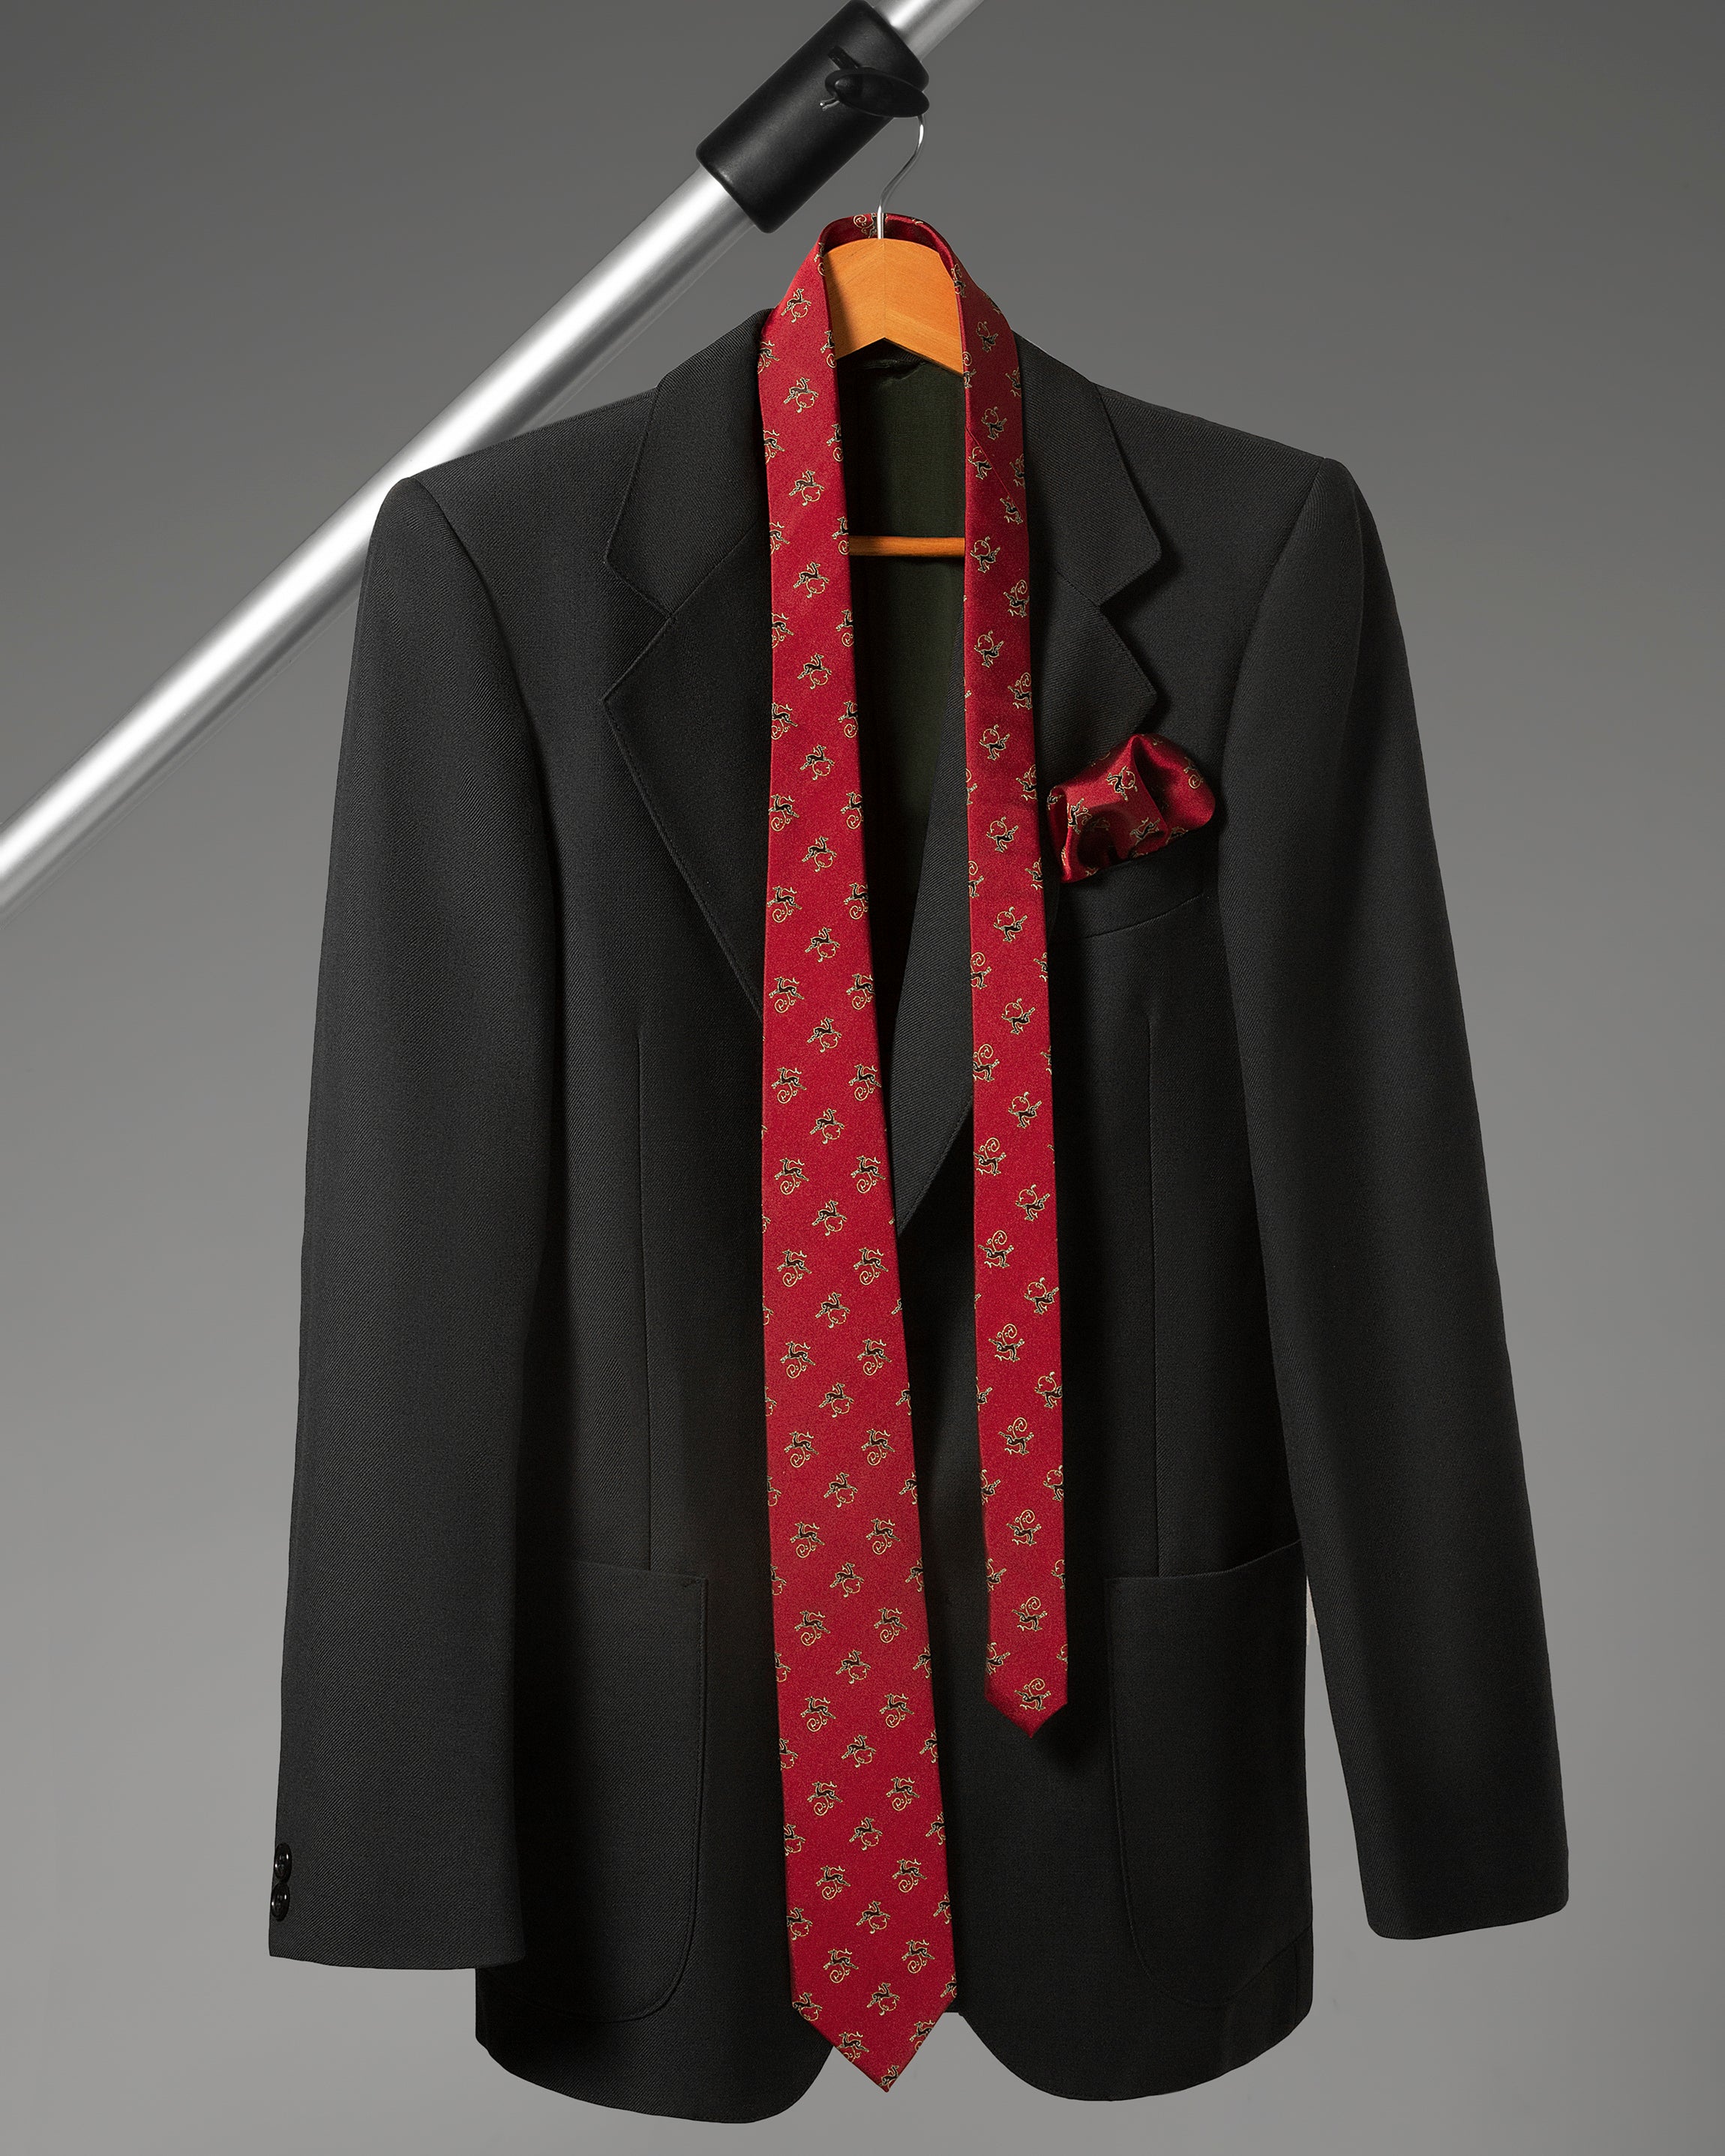 ჟაკარდის აბრეშუმის ჰალსტუხის და საგულის სეტი „ირმის ნახტომი“ (წითელი)